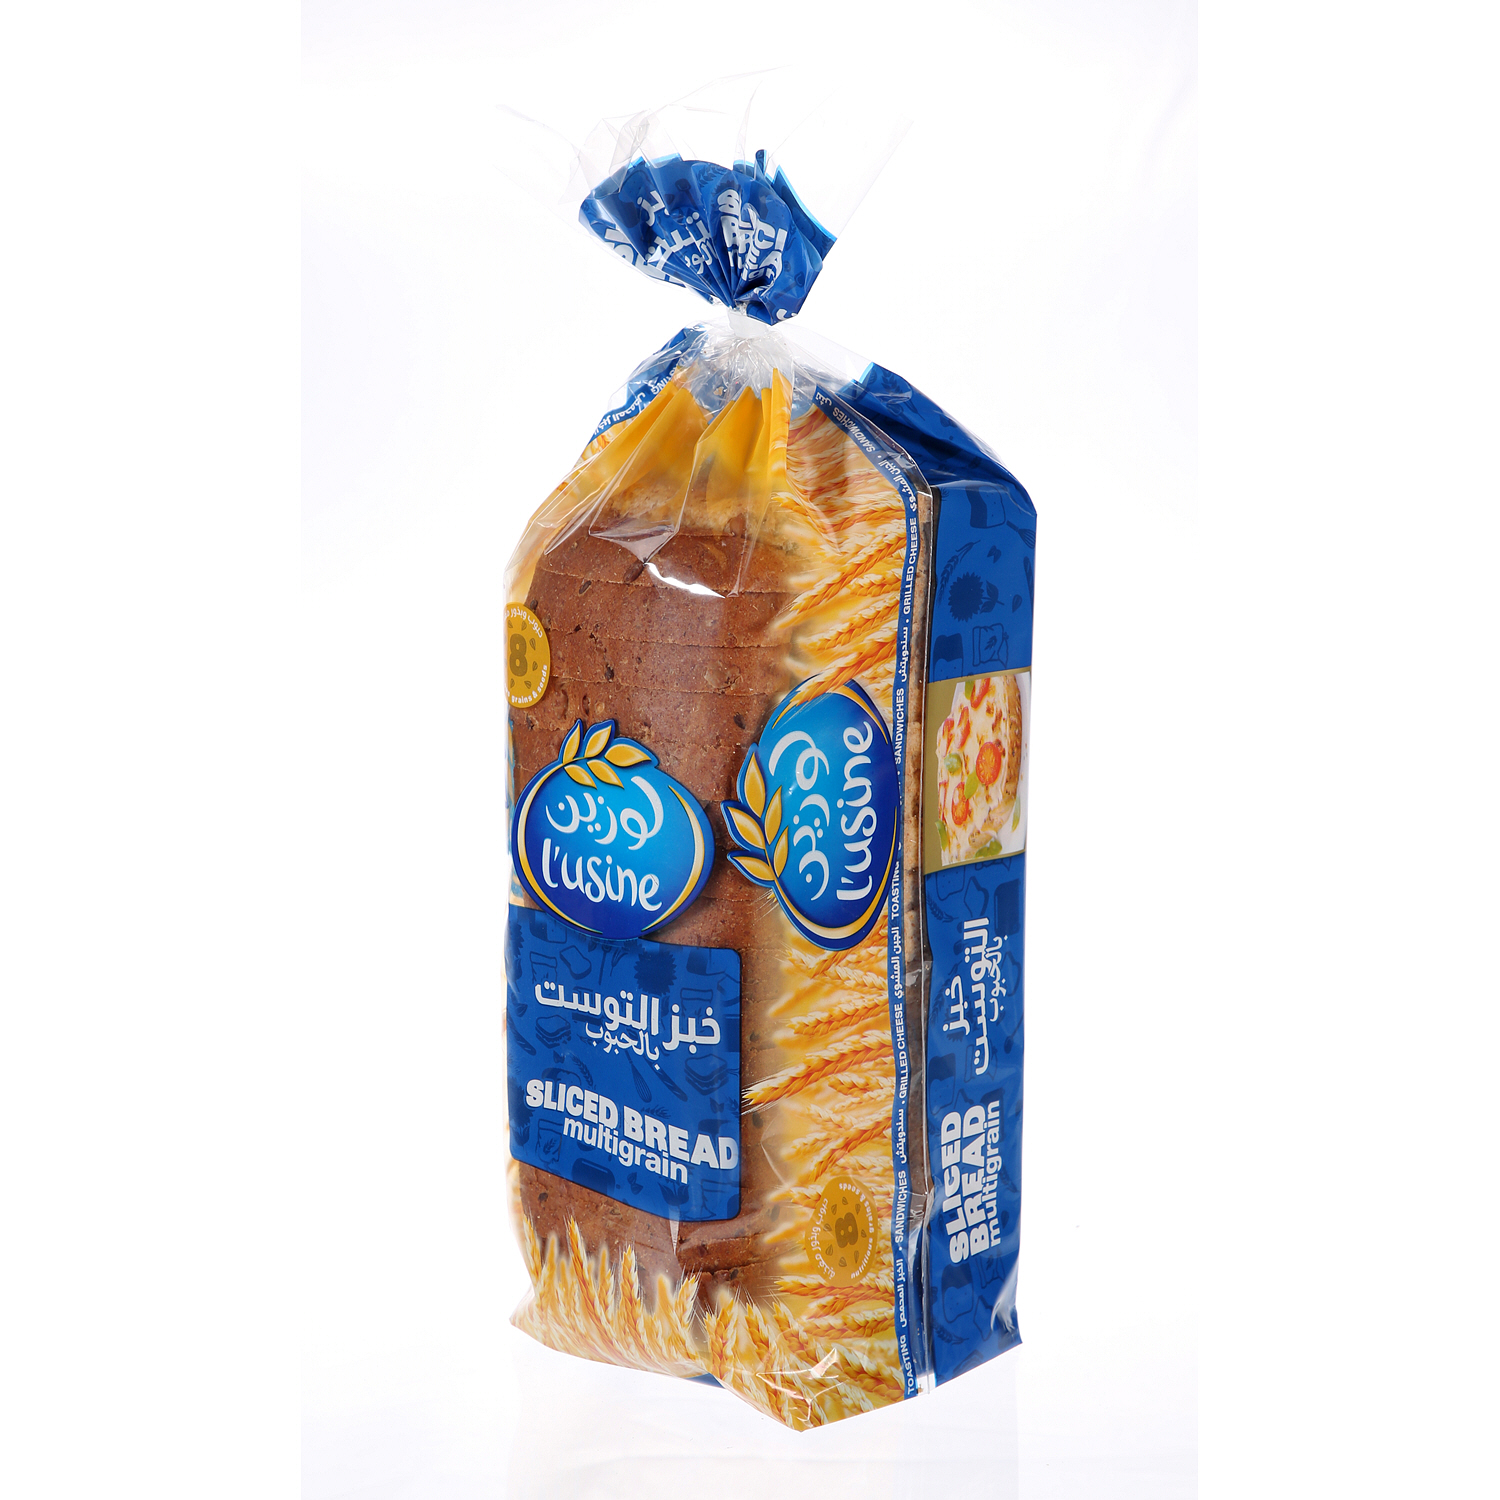 L'usine Slicesd Bread Multigain 600 g